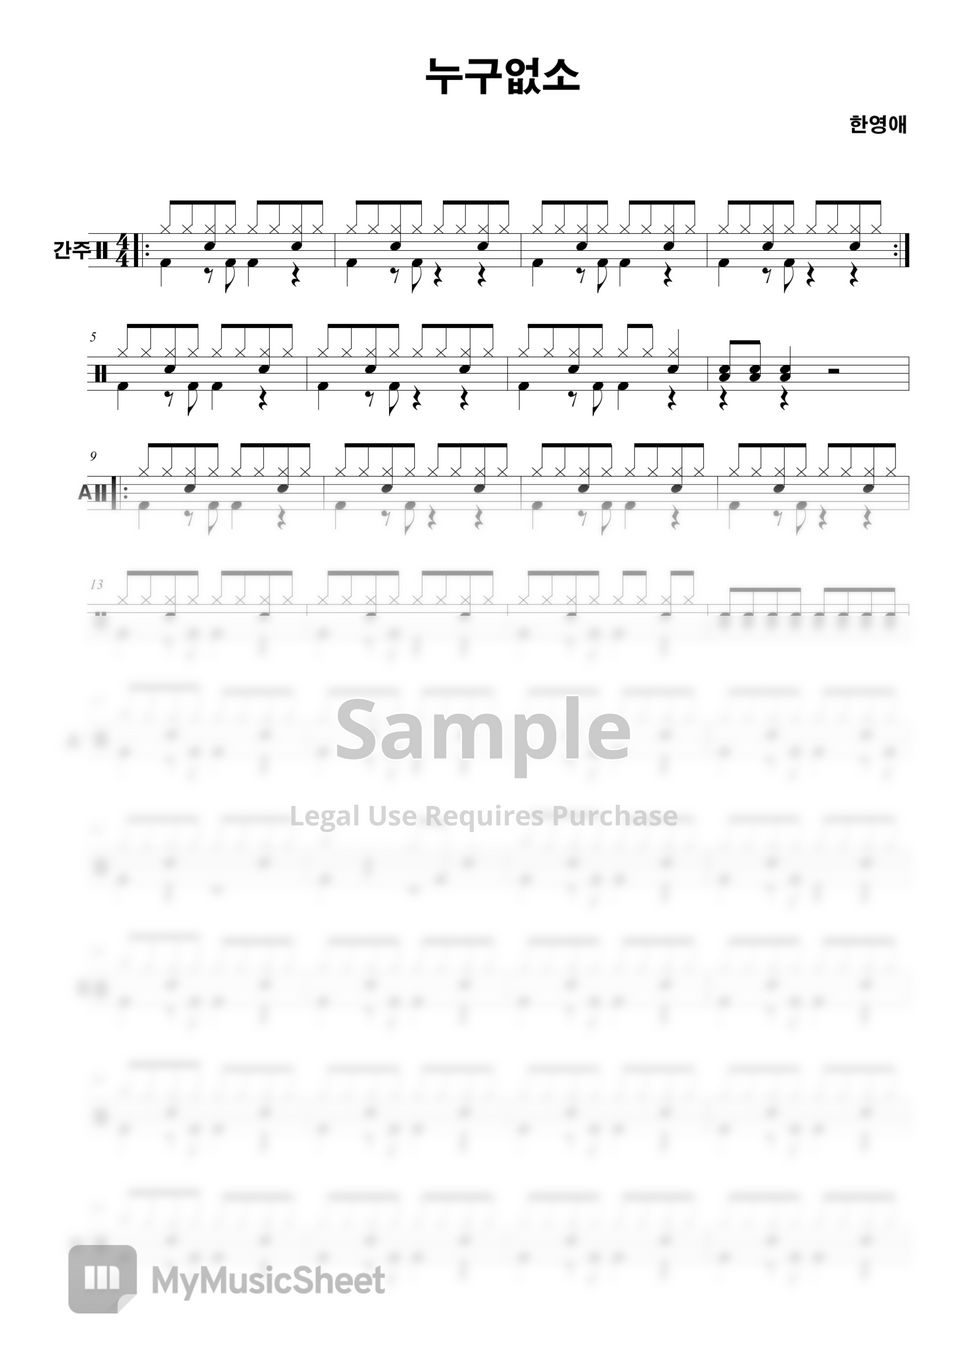 한영애 - 누구없소 (원곡 드럼연주 보다 쉽게 만듬, 보다 쉽게 접근할수 있도록 만든 악보,) by YooStudio